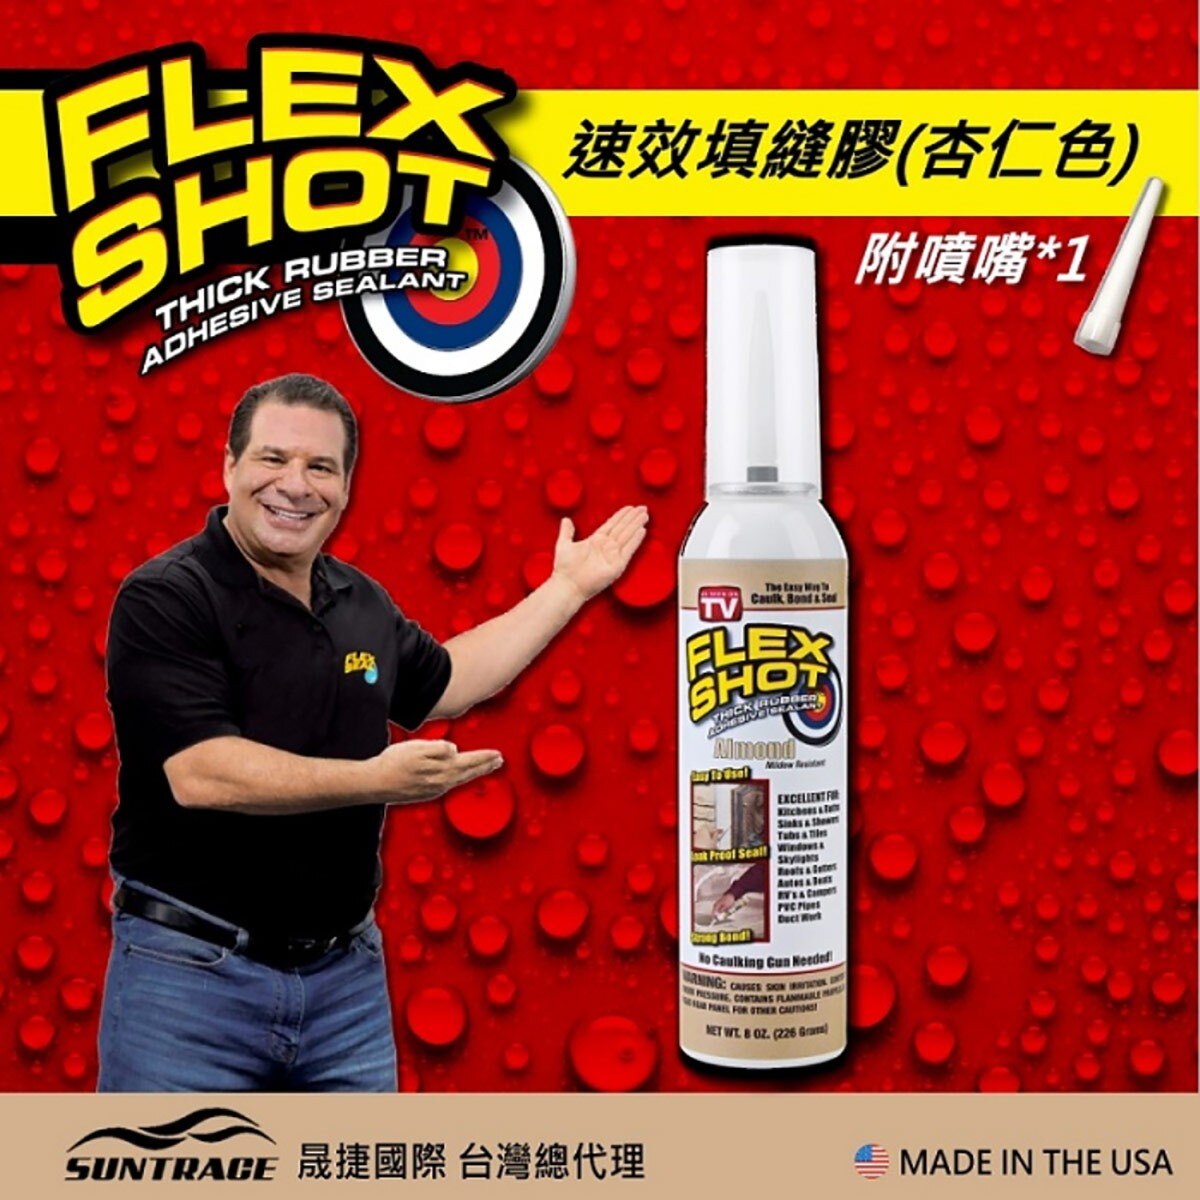 FLEX SHOT 速效填縫膠-杏仁色，固化乾燥後呈彈性橡膠，具伸展彈性。